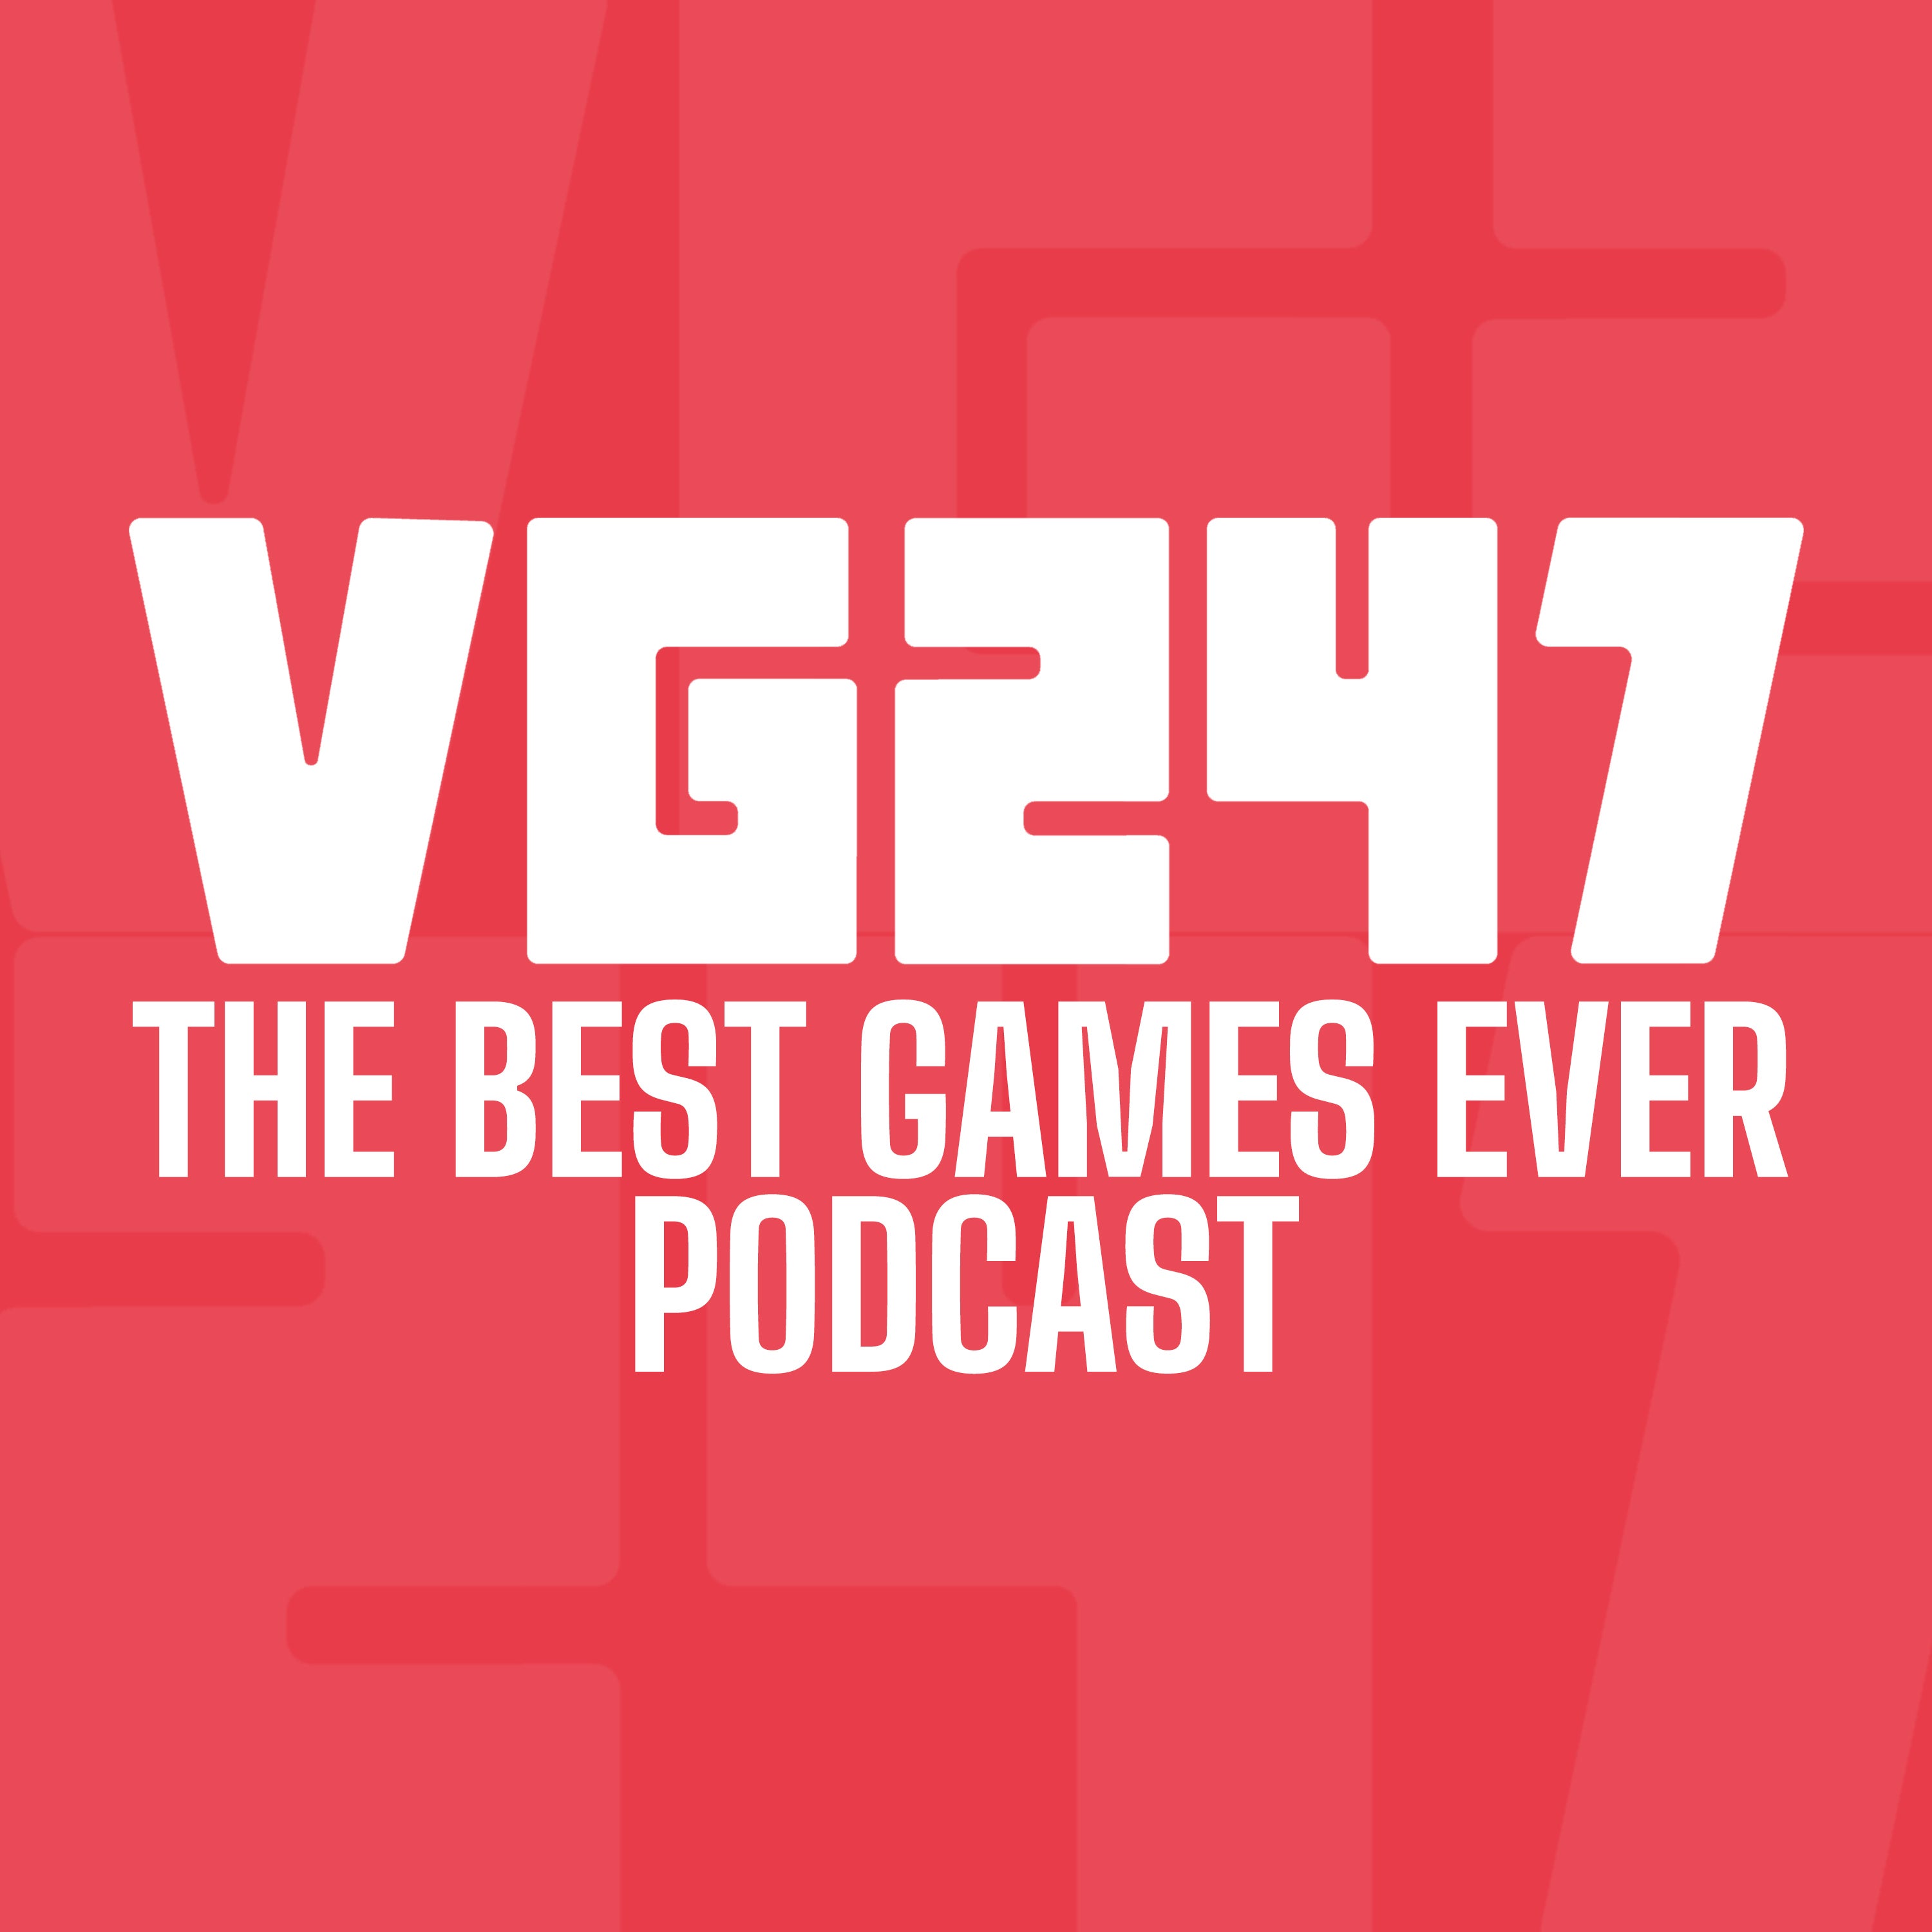 Logotipo para el podcast Best Games Ever de VG247.  Texto blanco sobre fondo rojo.